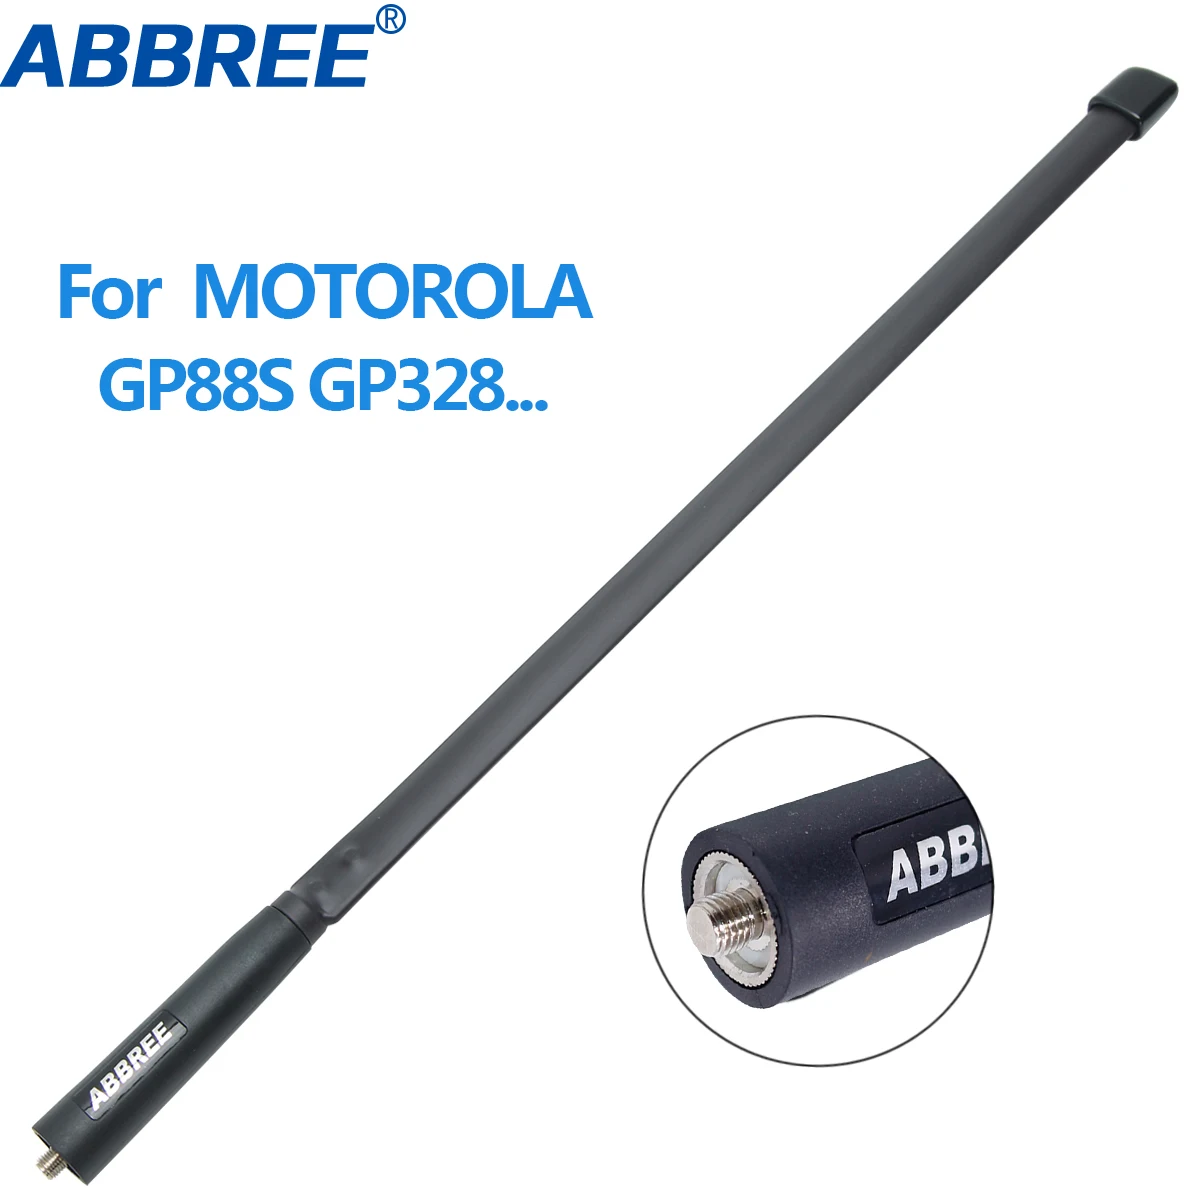 ABBREE MX מחבר 144/430Mhz טקטי אנטנה מוטורולה GP328 GP300 GP88 GP340 CP040 GP380 סאבר GP2000 HT750 EP450 רדיו - 2